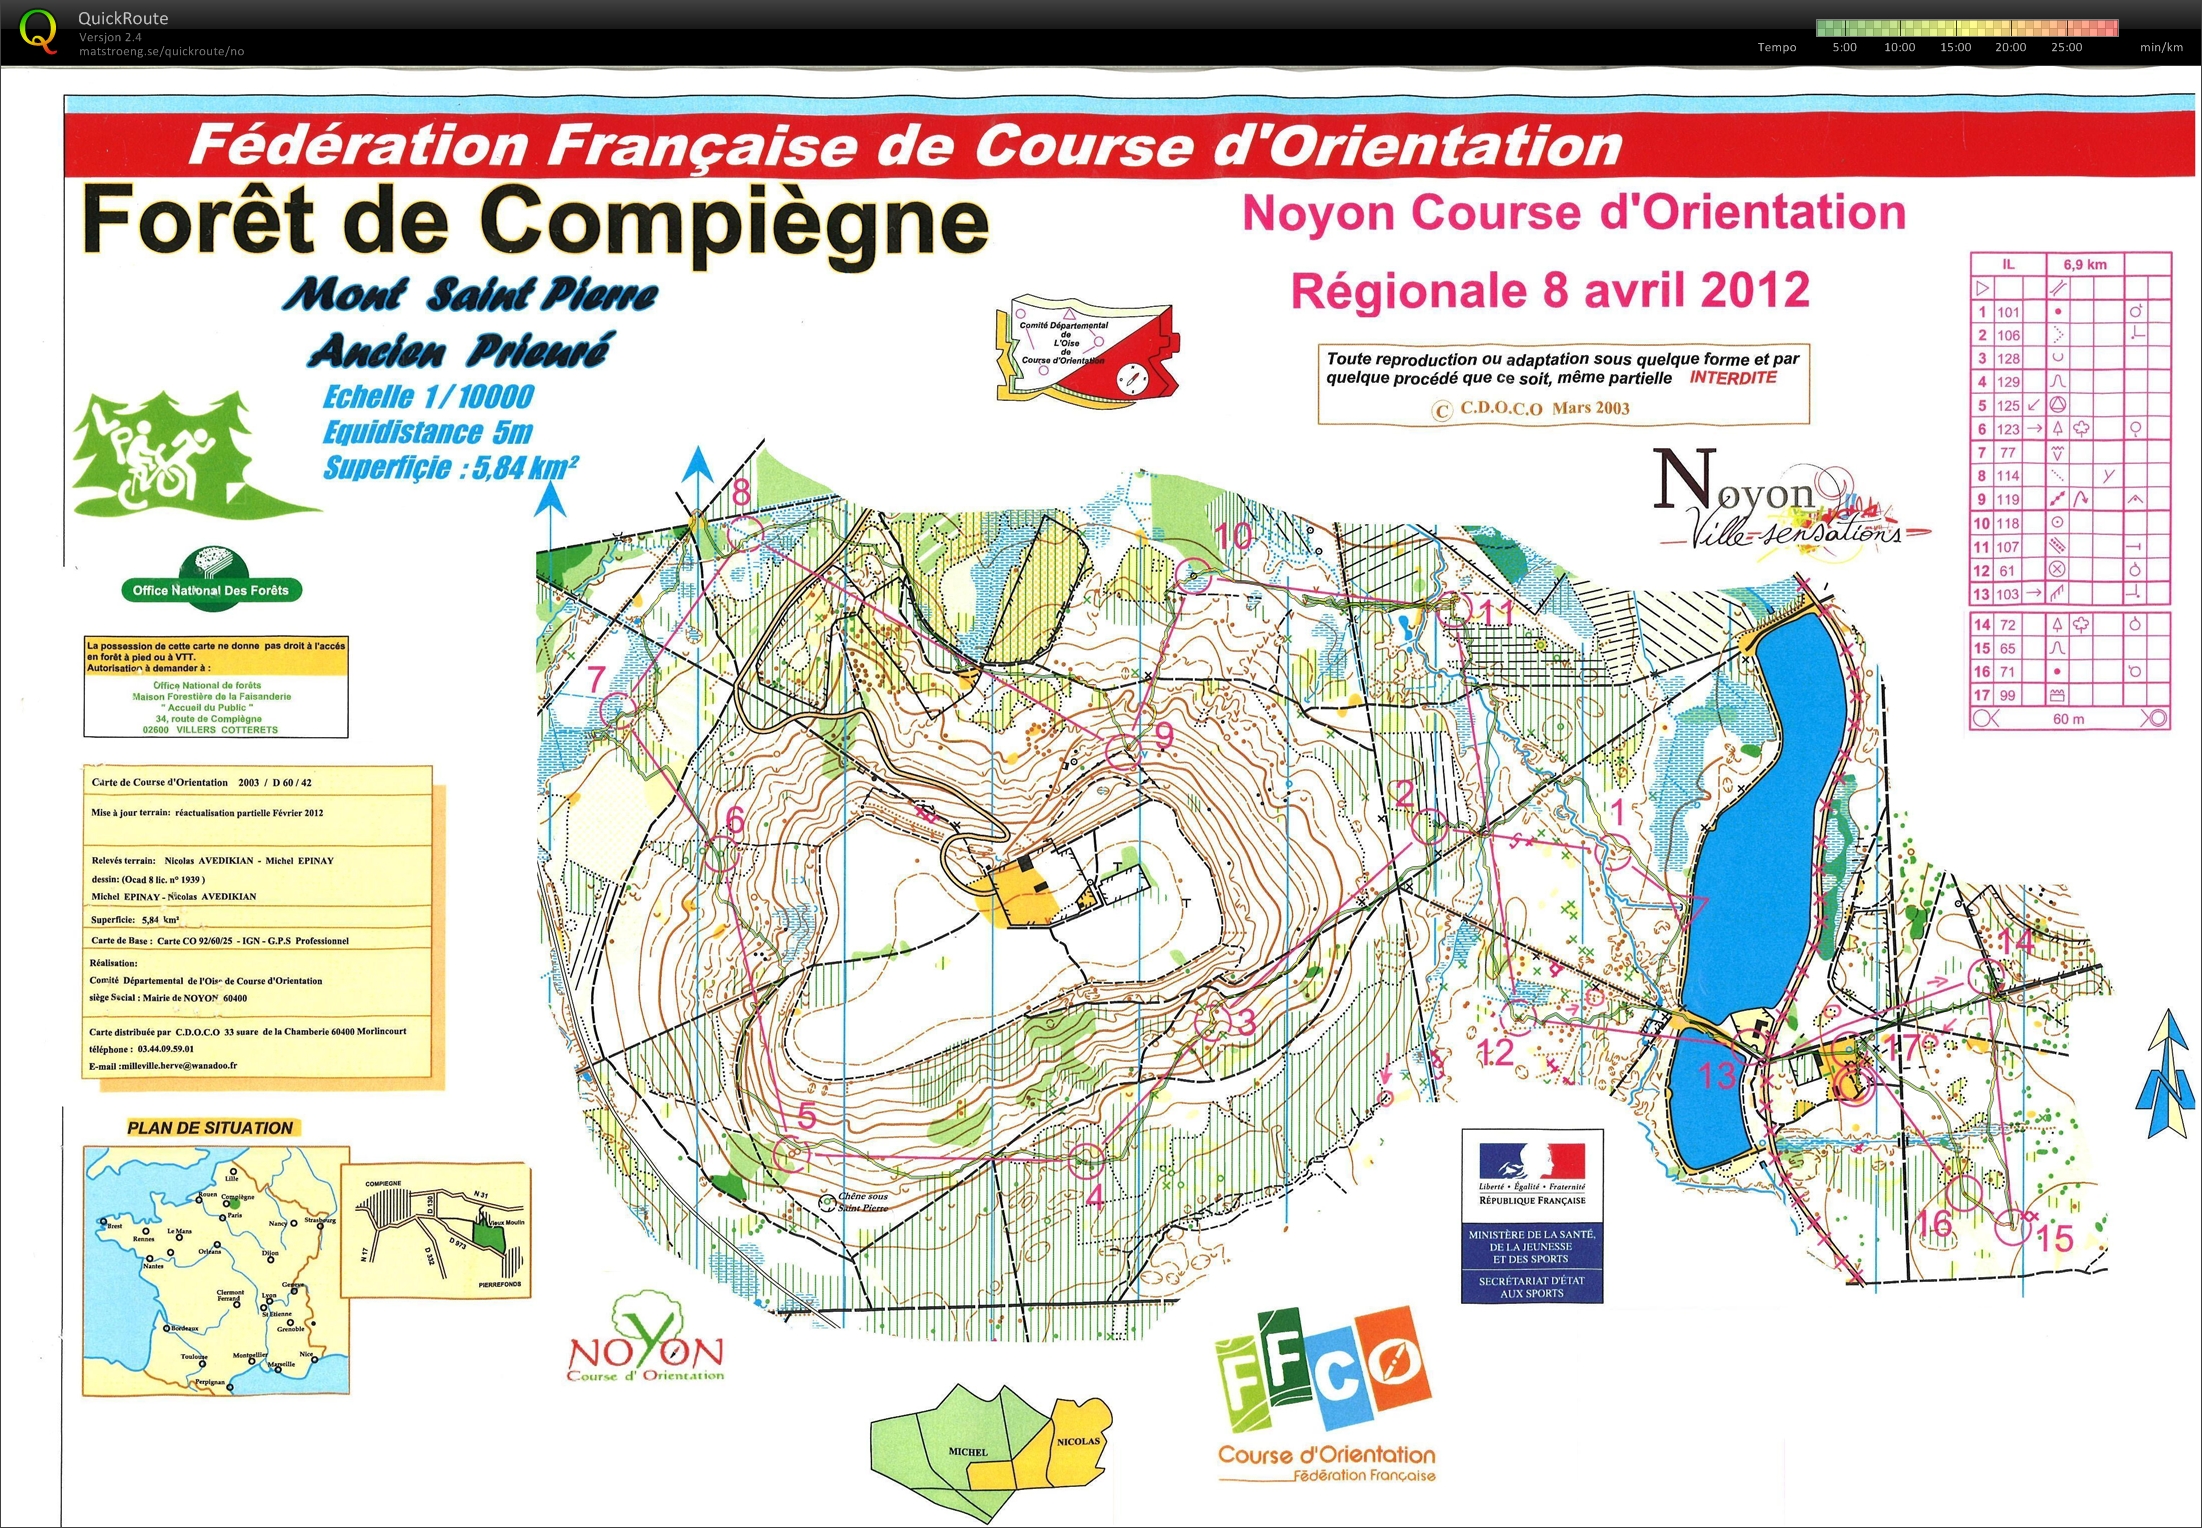 Noyon Course d'Orientation Long (08.04.2012)